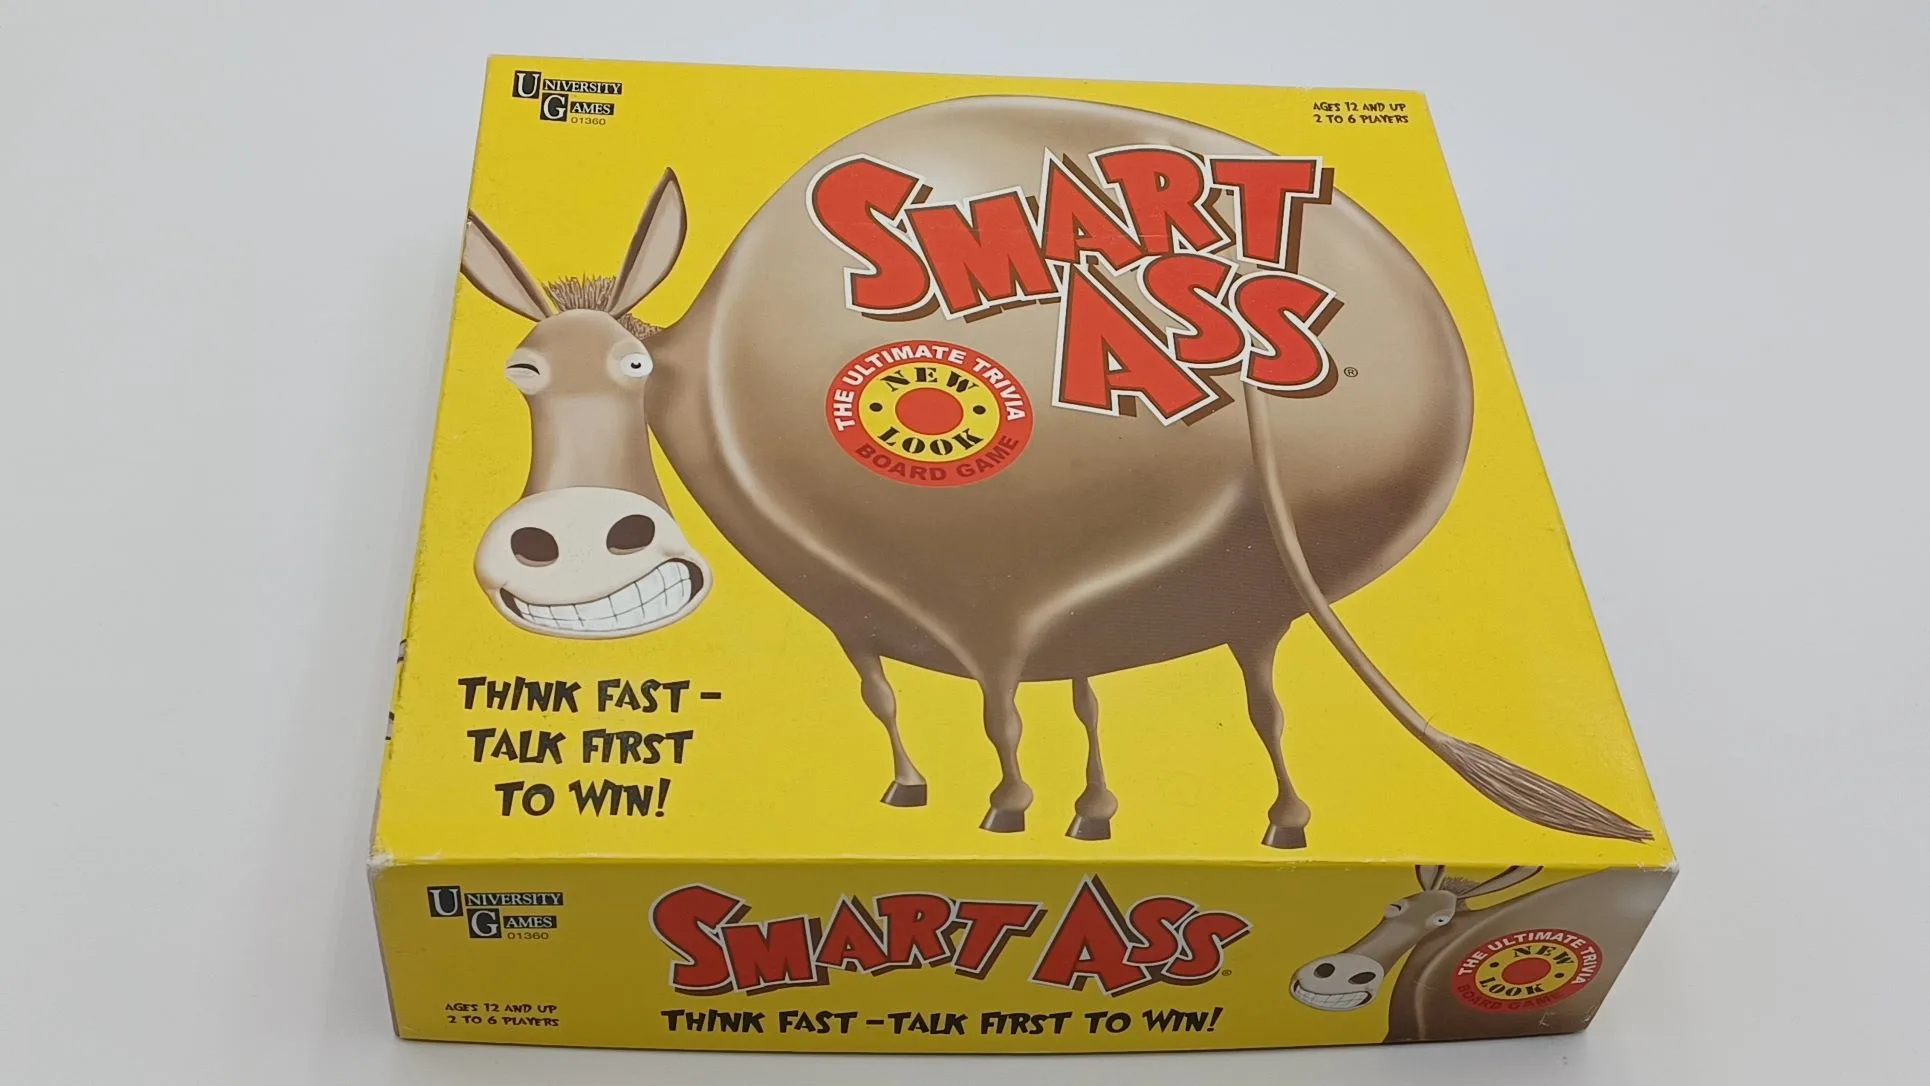 Box for Smart Ass